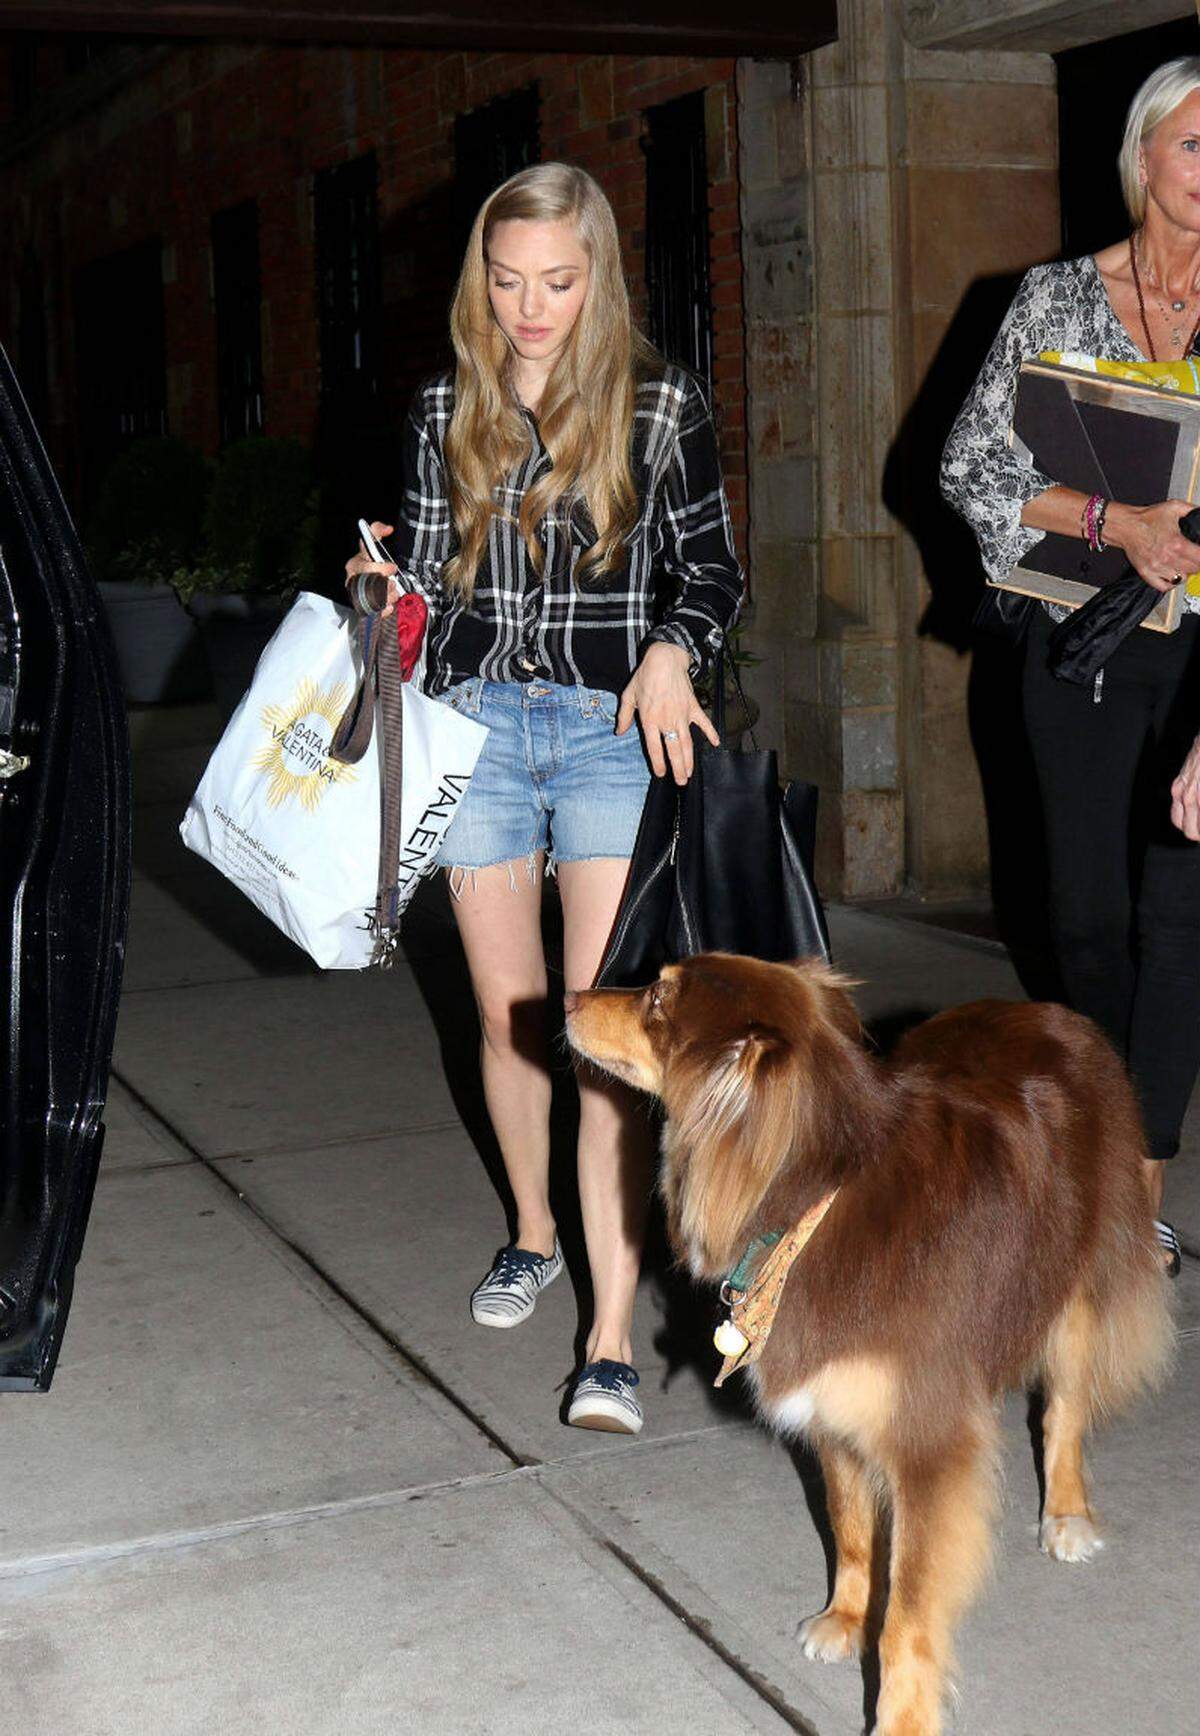 Schauspielerin Amanda Seyfried greift zu Jeans, wenn sie mit ihrem Hund spazieren geht.